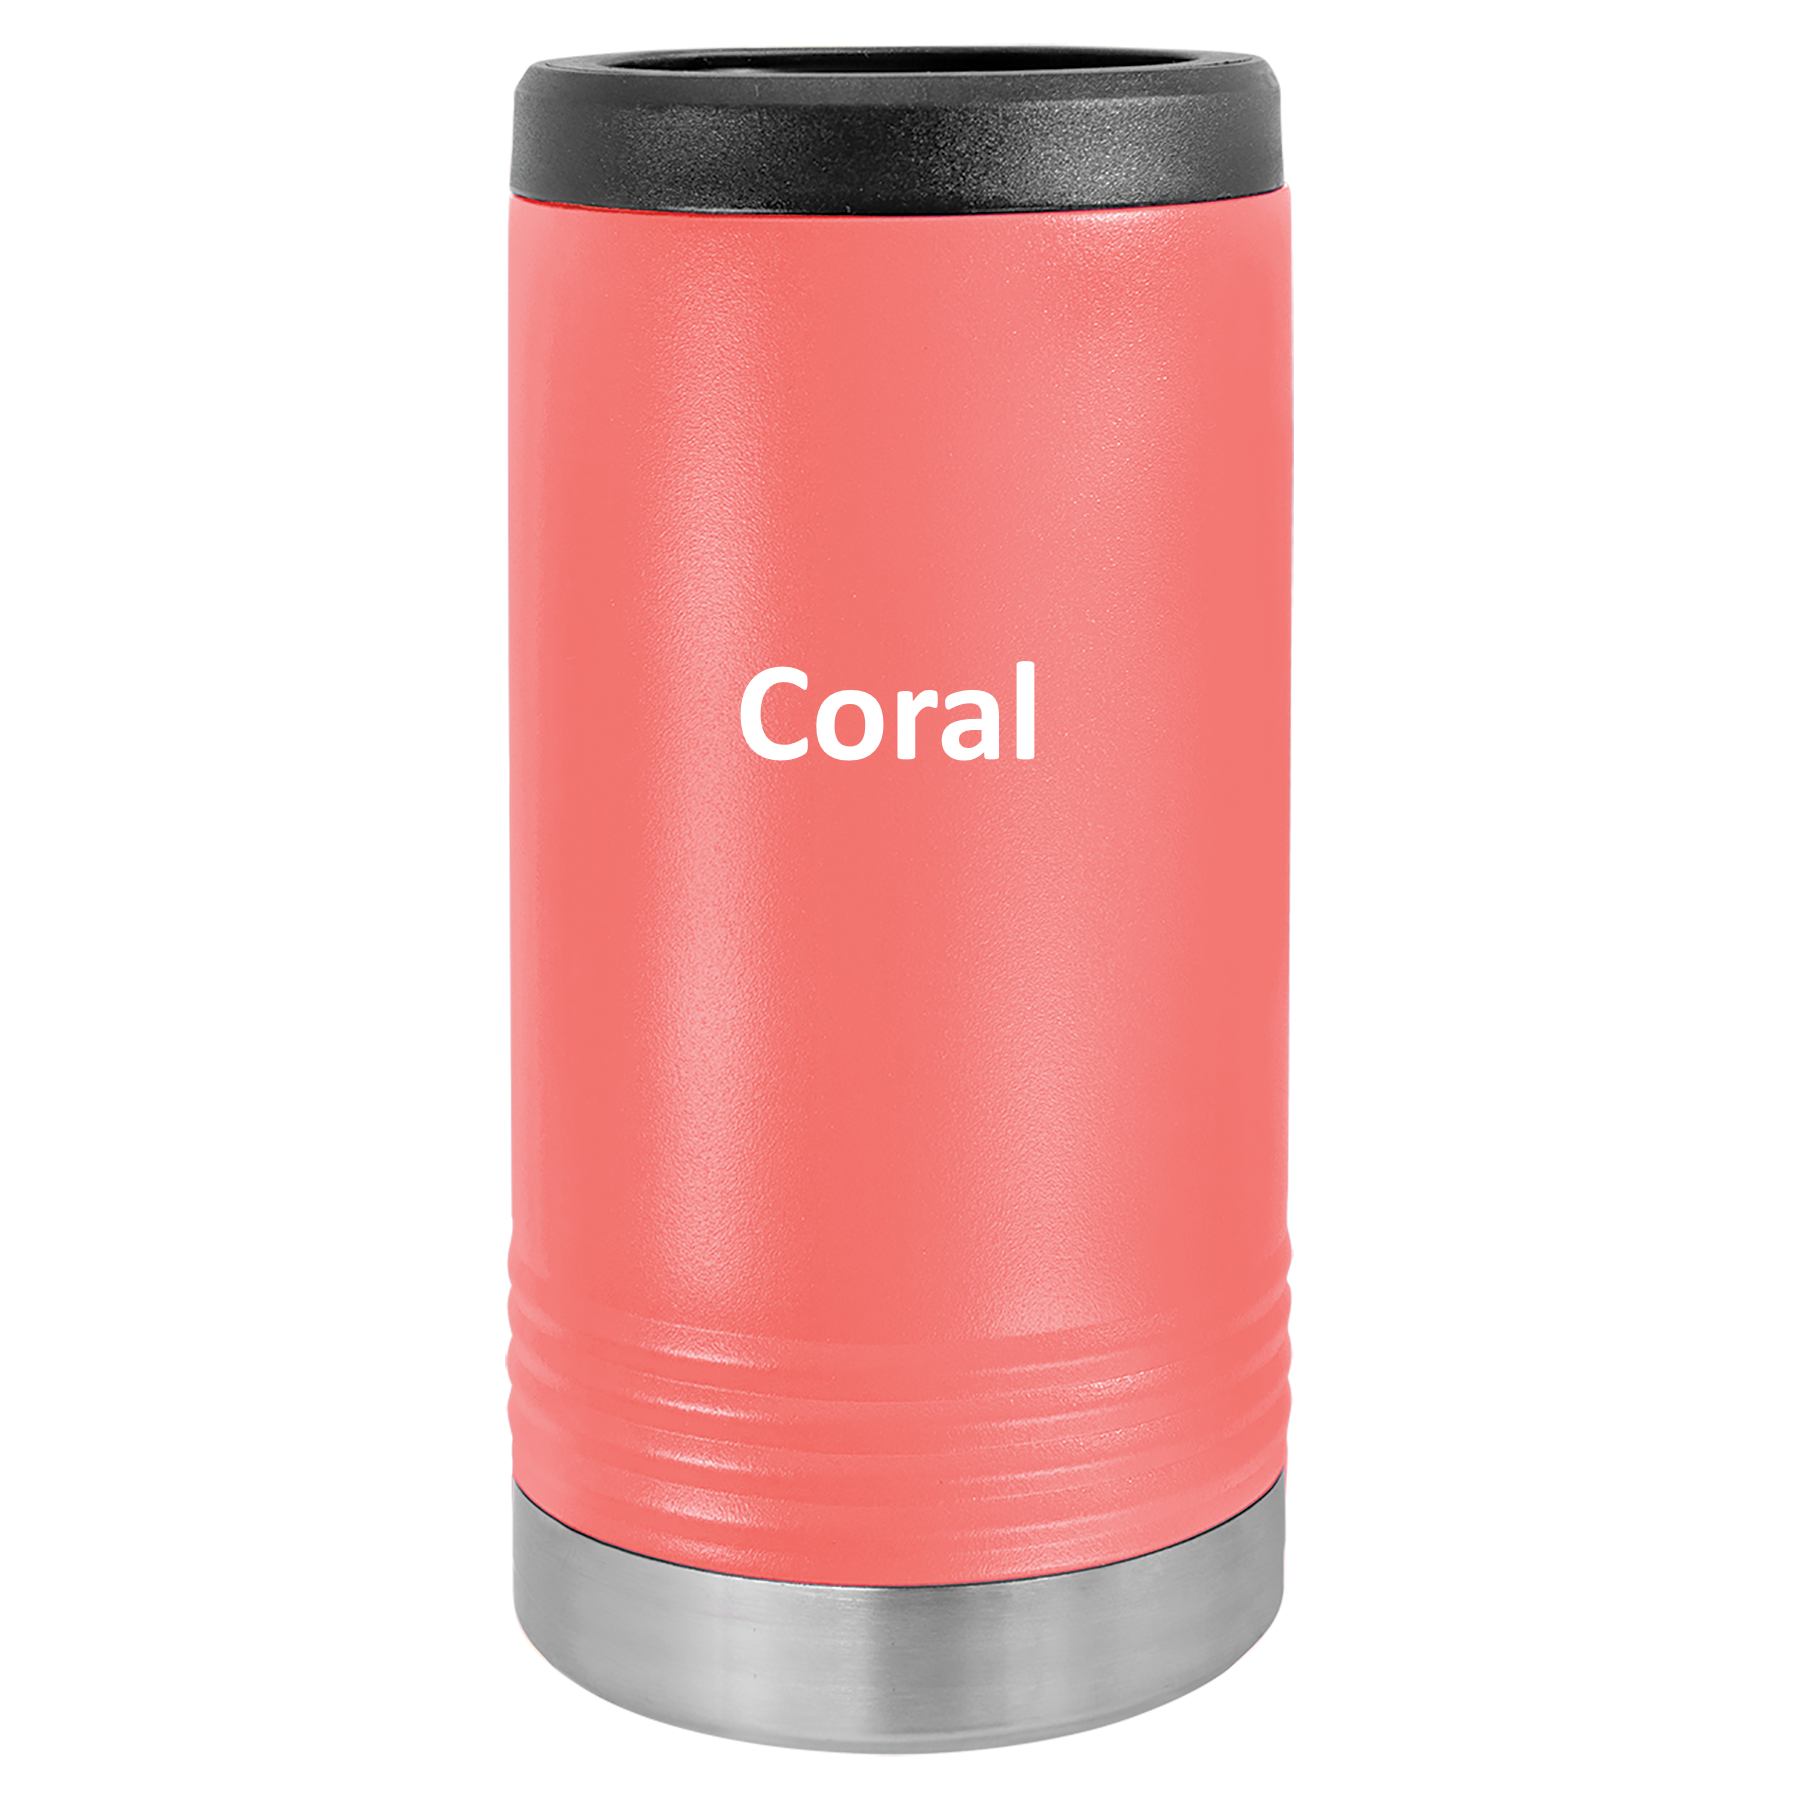 Coral 12oz Slim Beverage Holder